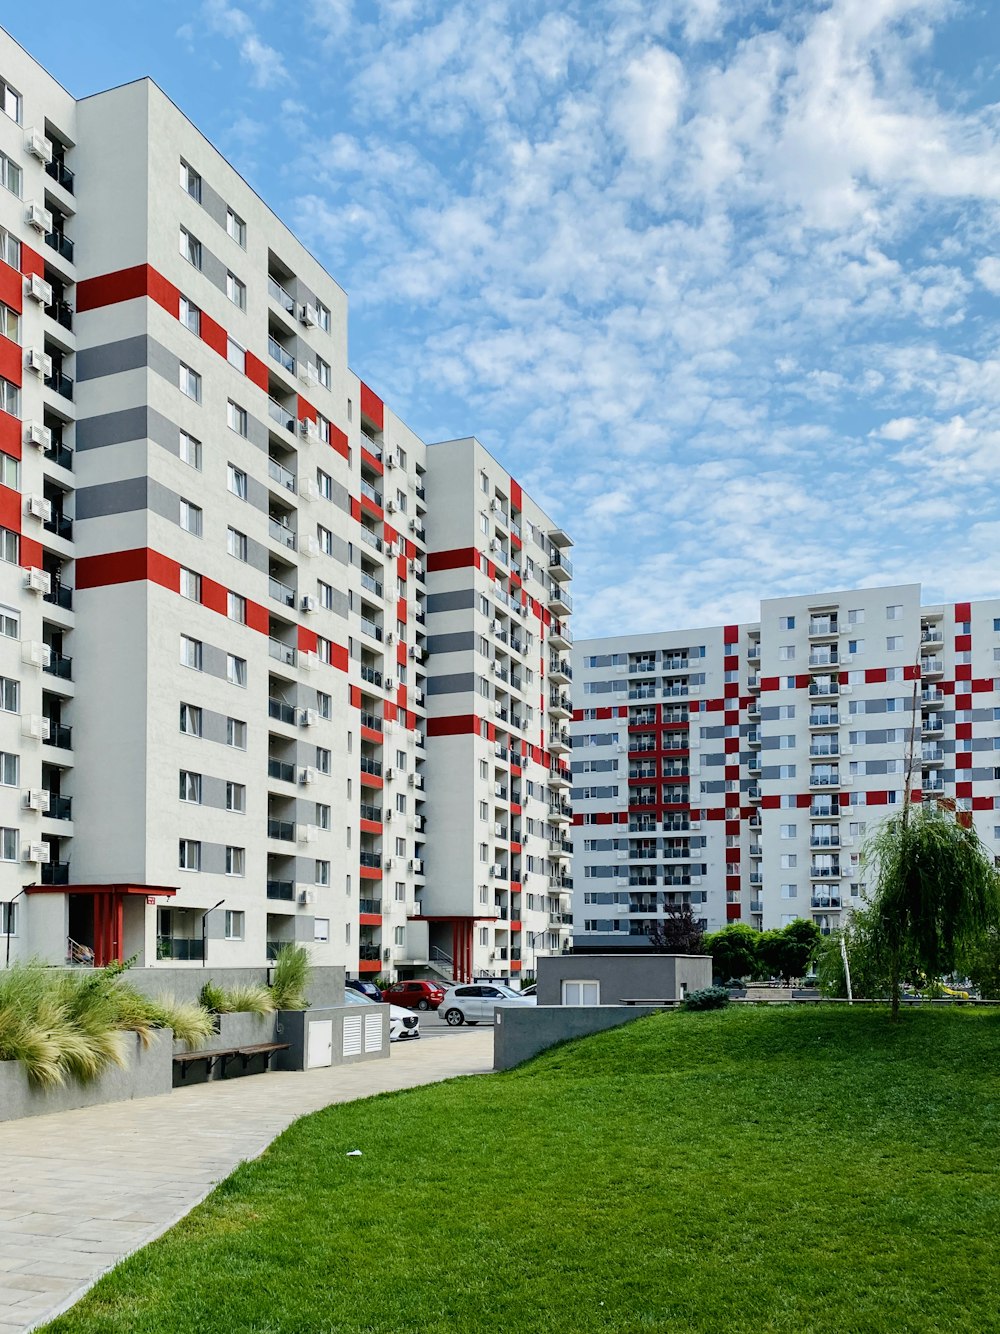 edifício de concreto branco e vermelho